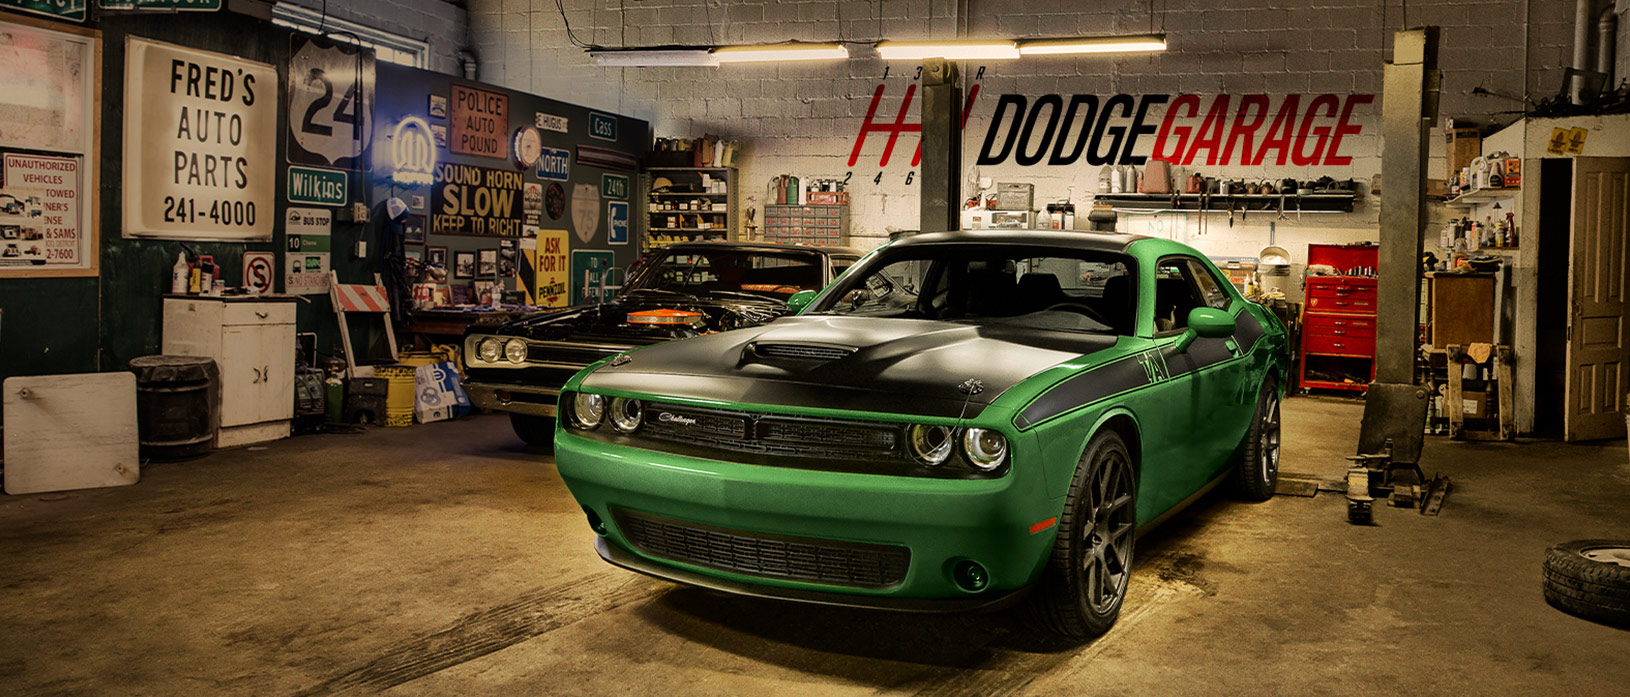 dodge vehicle in a garage